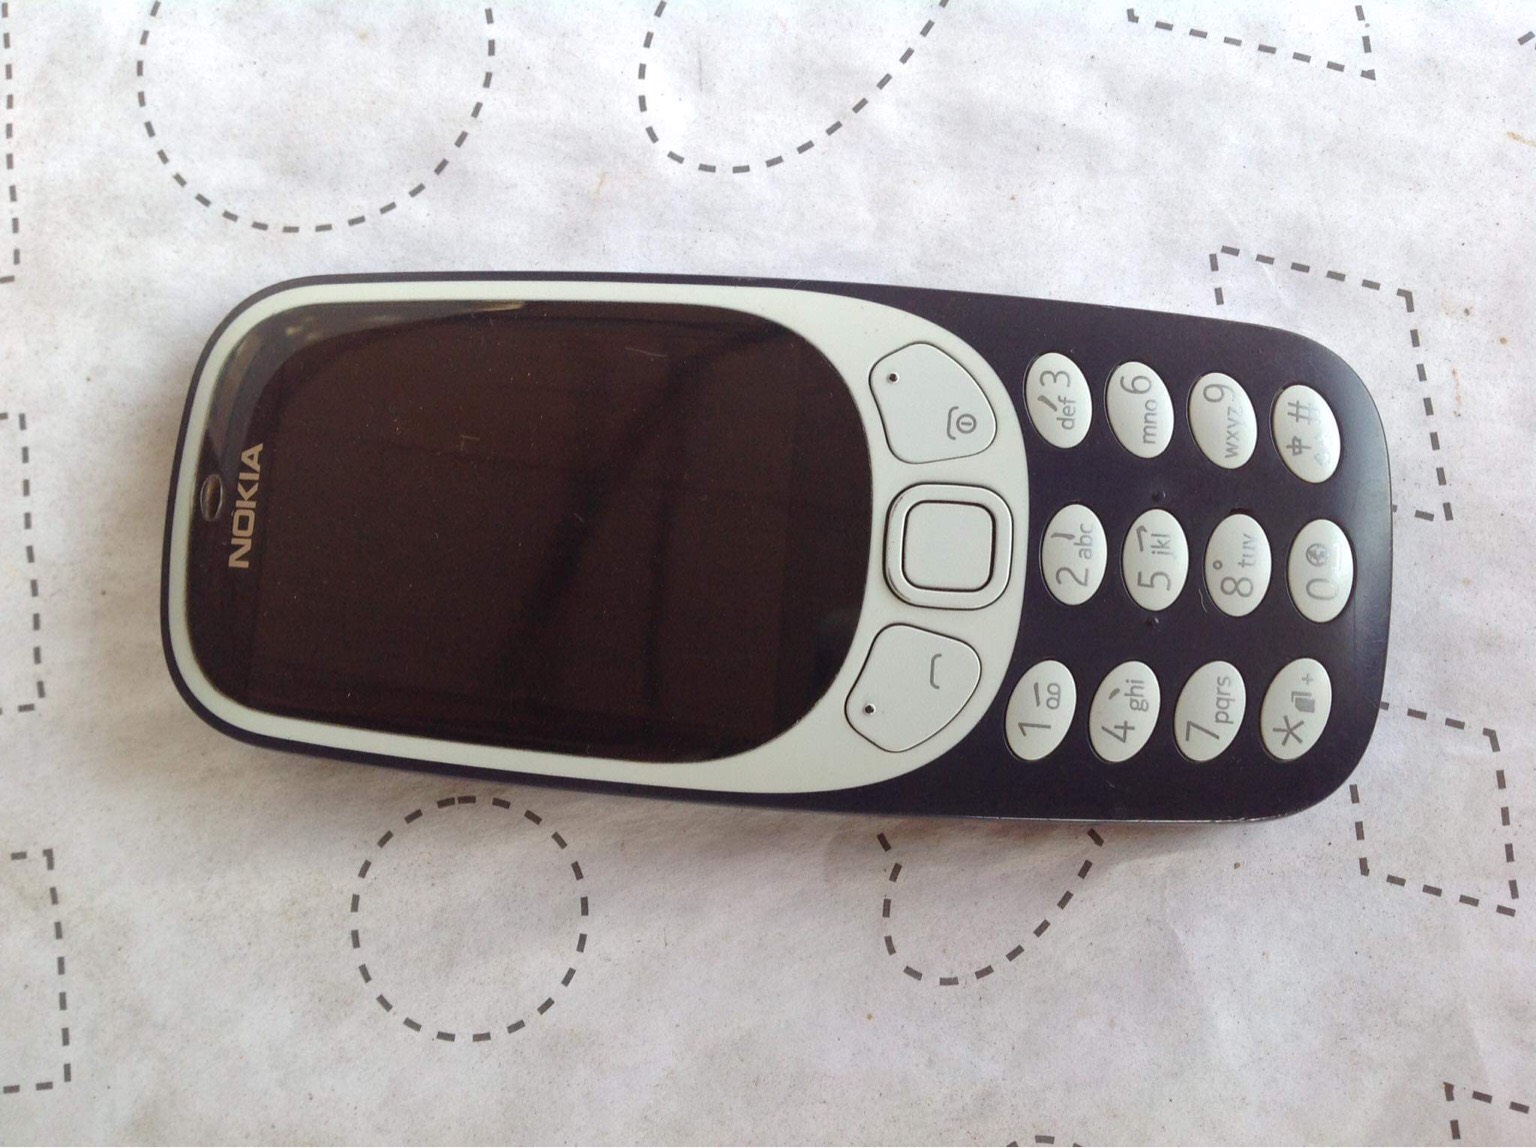 Bàn Phím Nokia 3310 Cũ Điện Thoại Cách Ly Trên Nền Bàn Gỗ Điện Thoại Di  Động Cổ Điển Cũ Với Màn Hình Nhỏ Hình ảnh Sẵn có - Tải xuống Hình